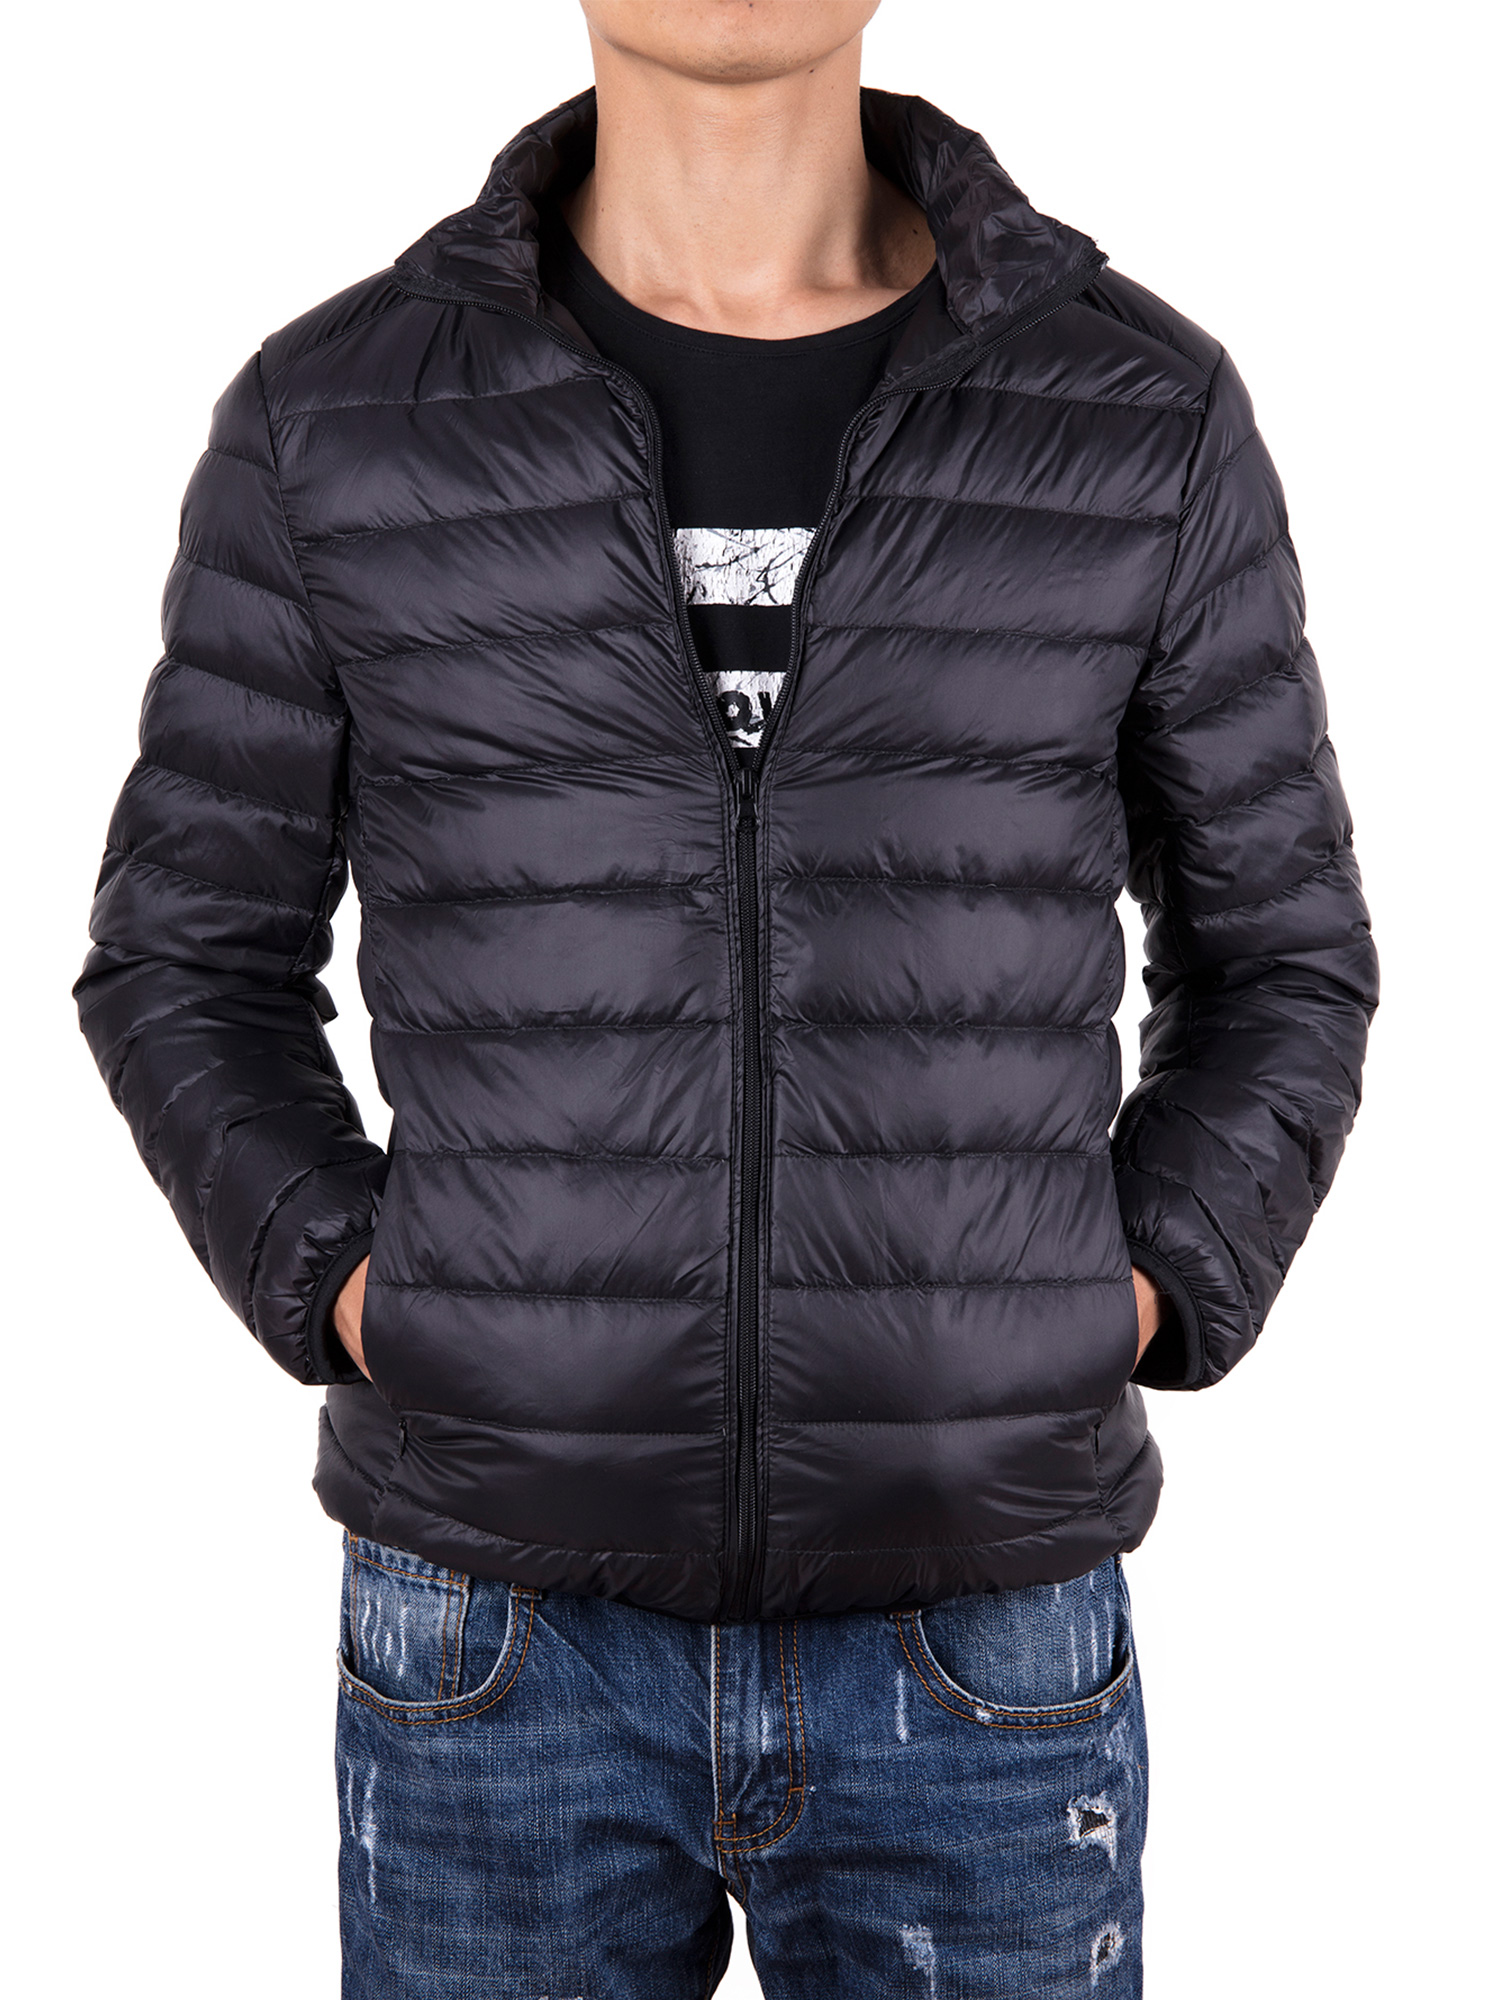 Men Down Jacket Outwear Puffer Coats Casual Zip Up Windbreaker Lightweight Winter Jackets Black - image 1 of 8